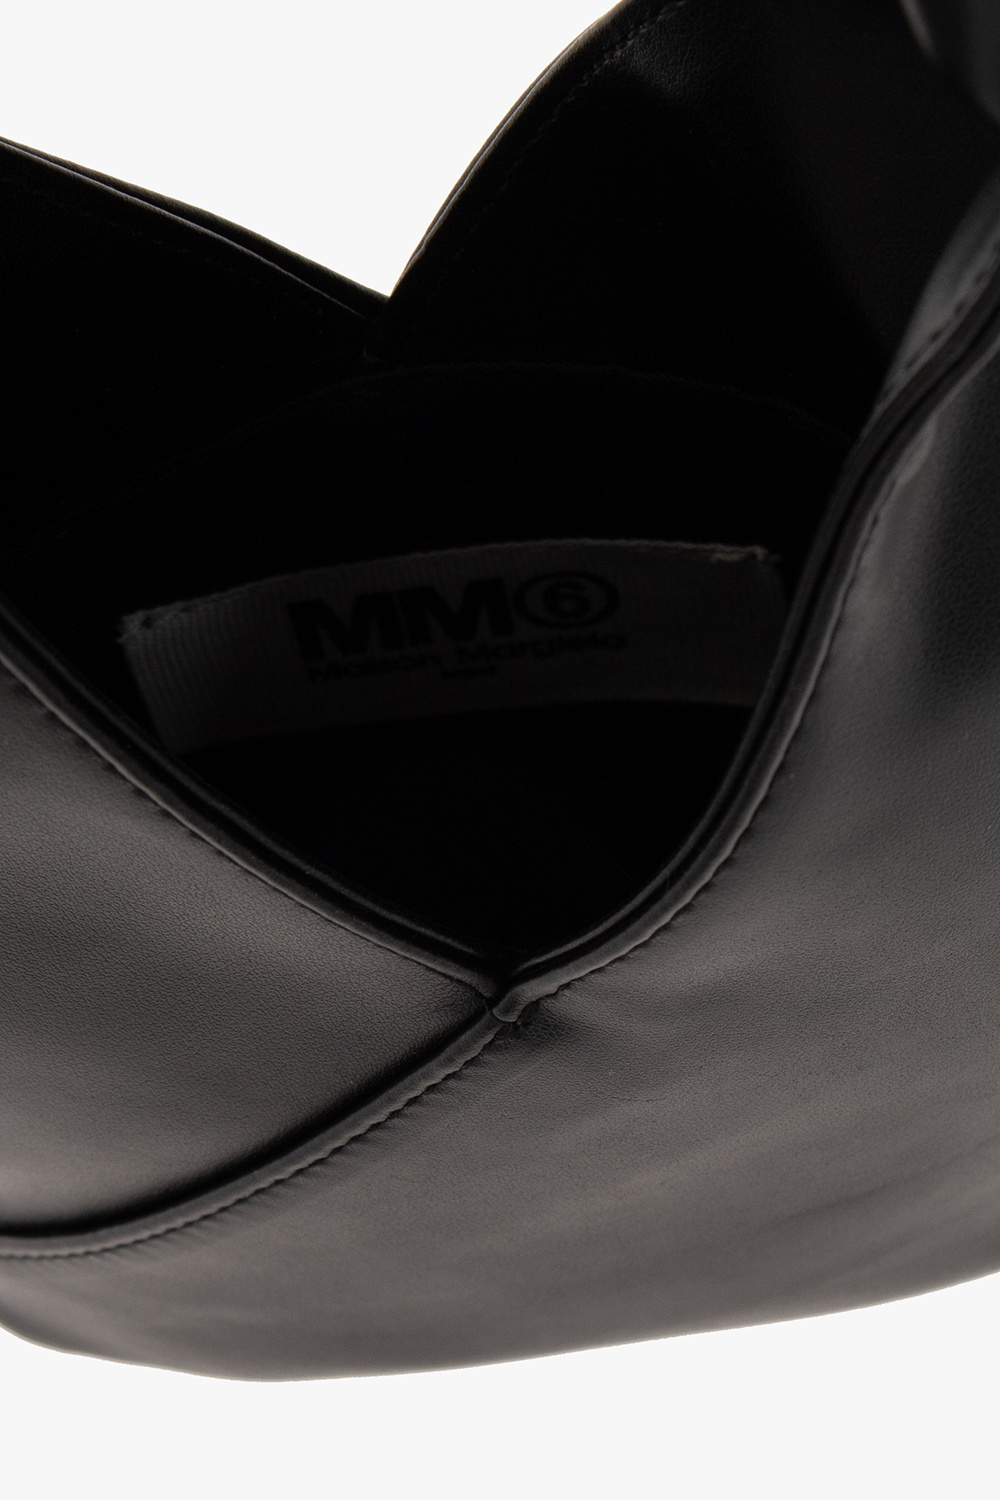 MM6 Maison Margiela logo-charm leather shoulder bag